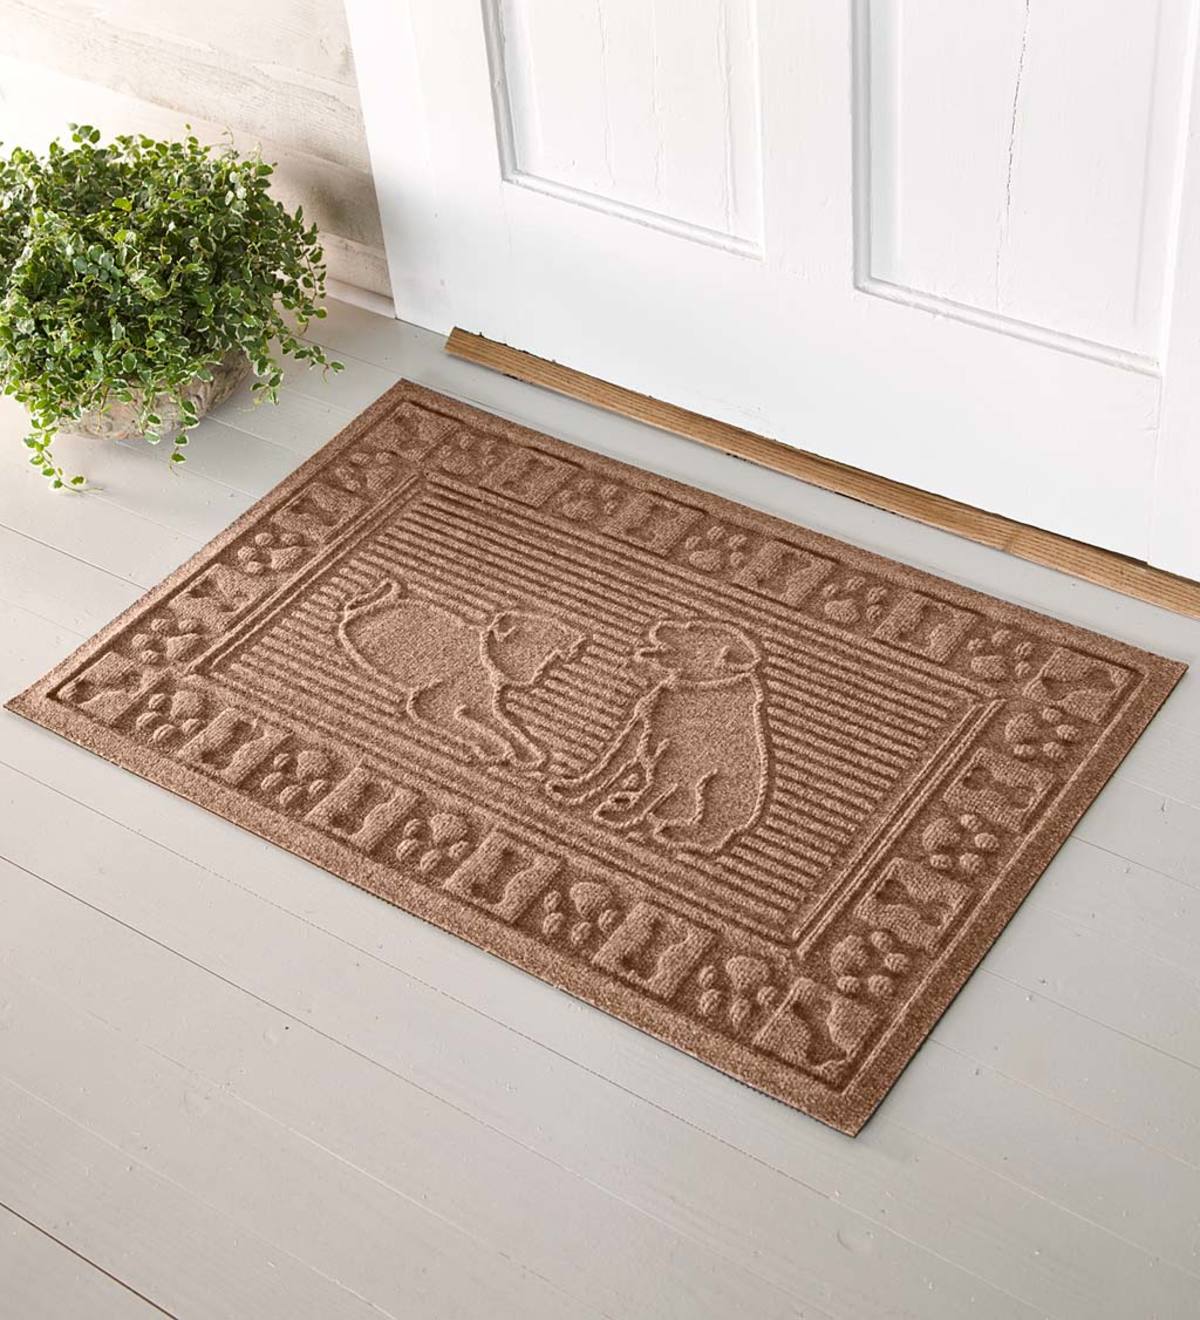 Waterhog Dog Doormat, 2' x 3'